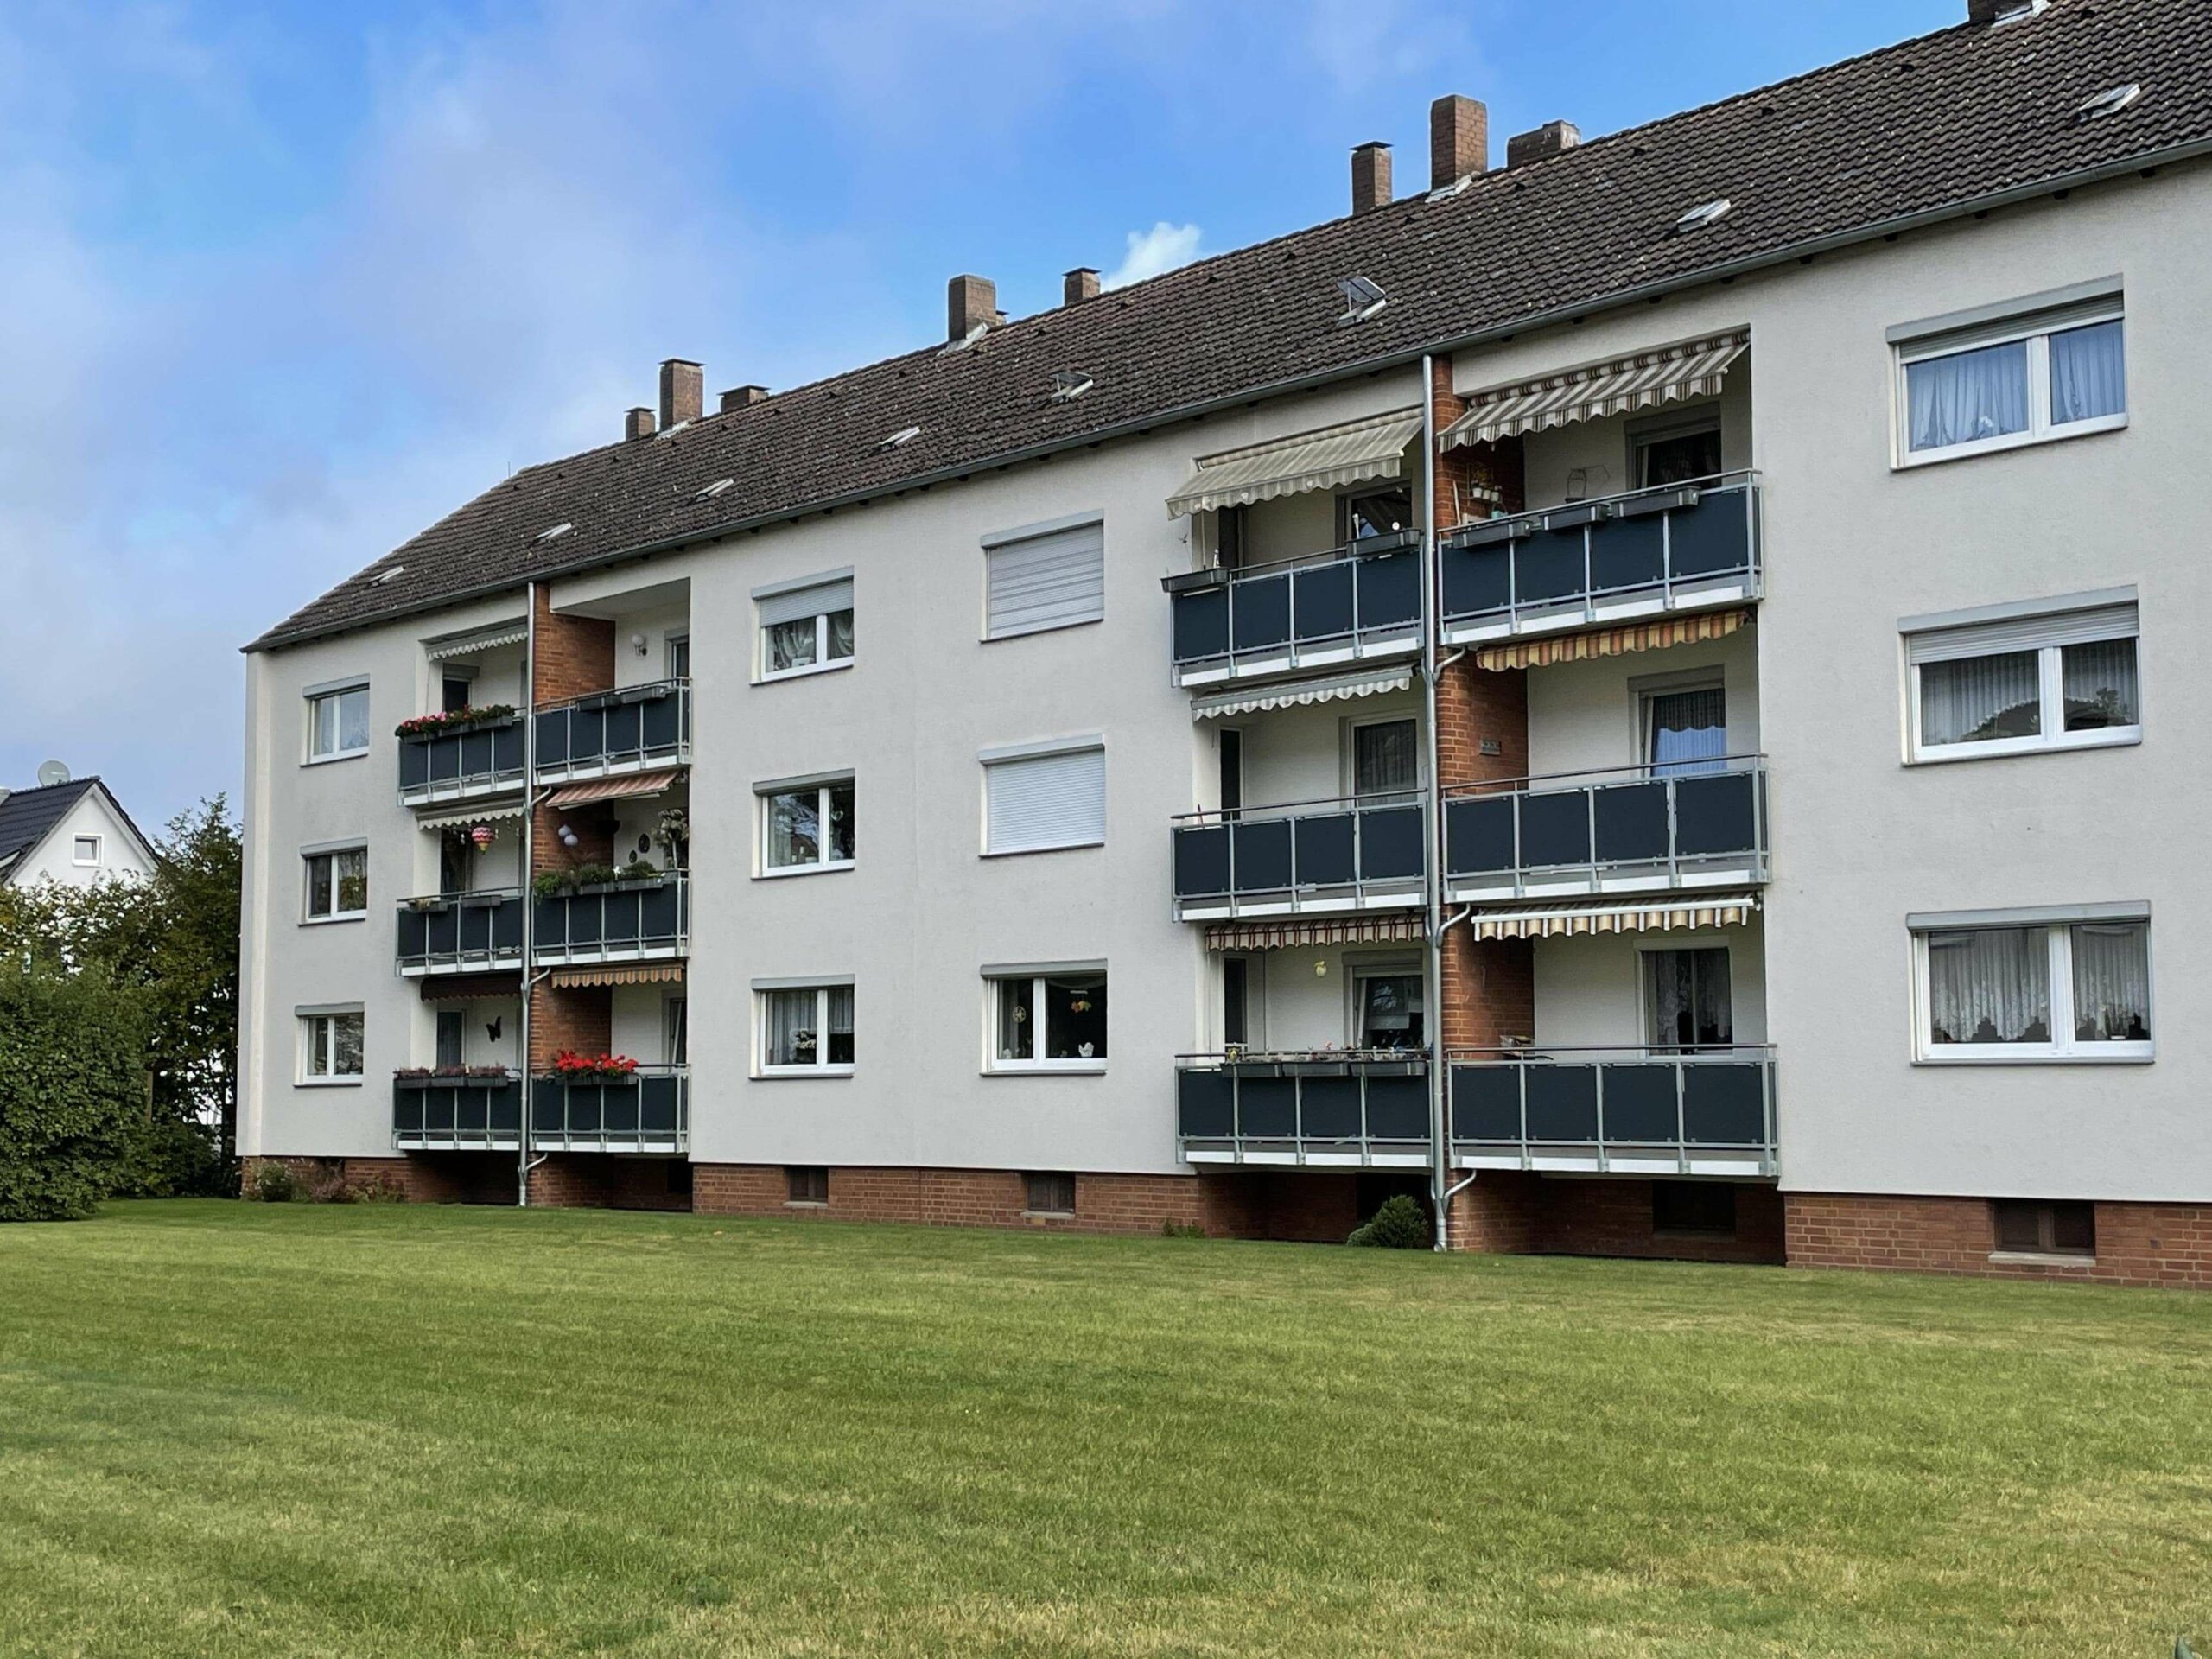 Schicke 3-Zi.-ETW mit Balkon im Hochparterre einer gepflegten Wohnanlage in Havelse, 30823 Garbsen, Erdgeschosswohnung